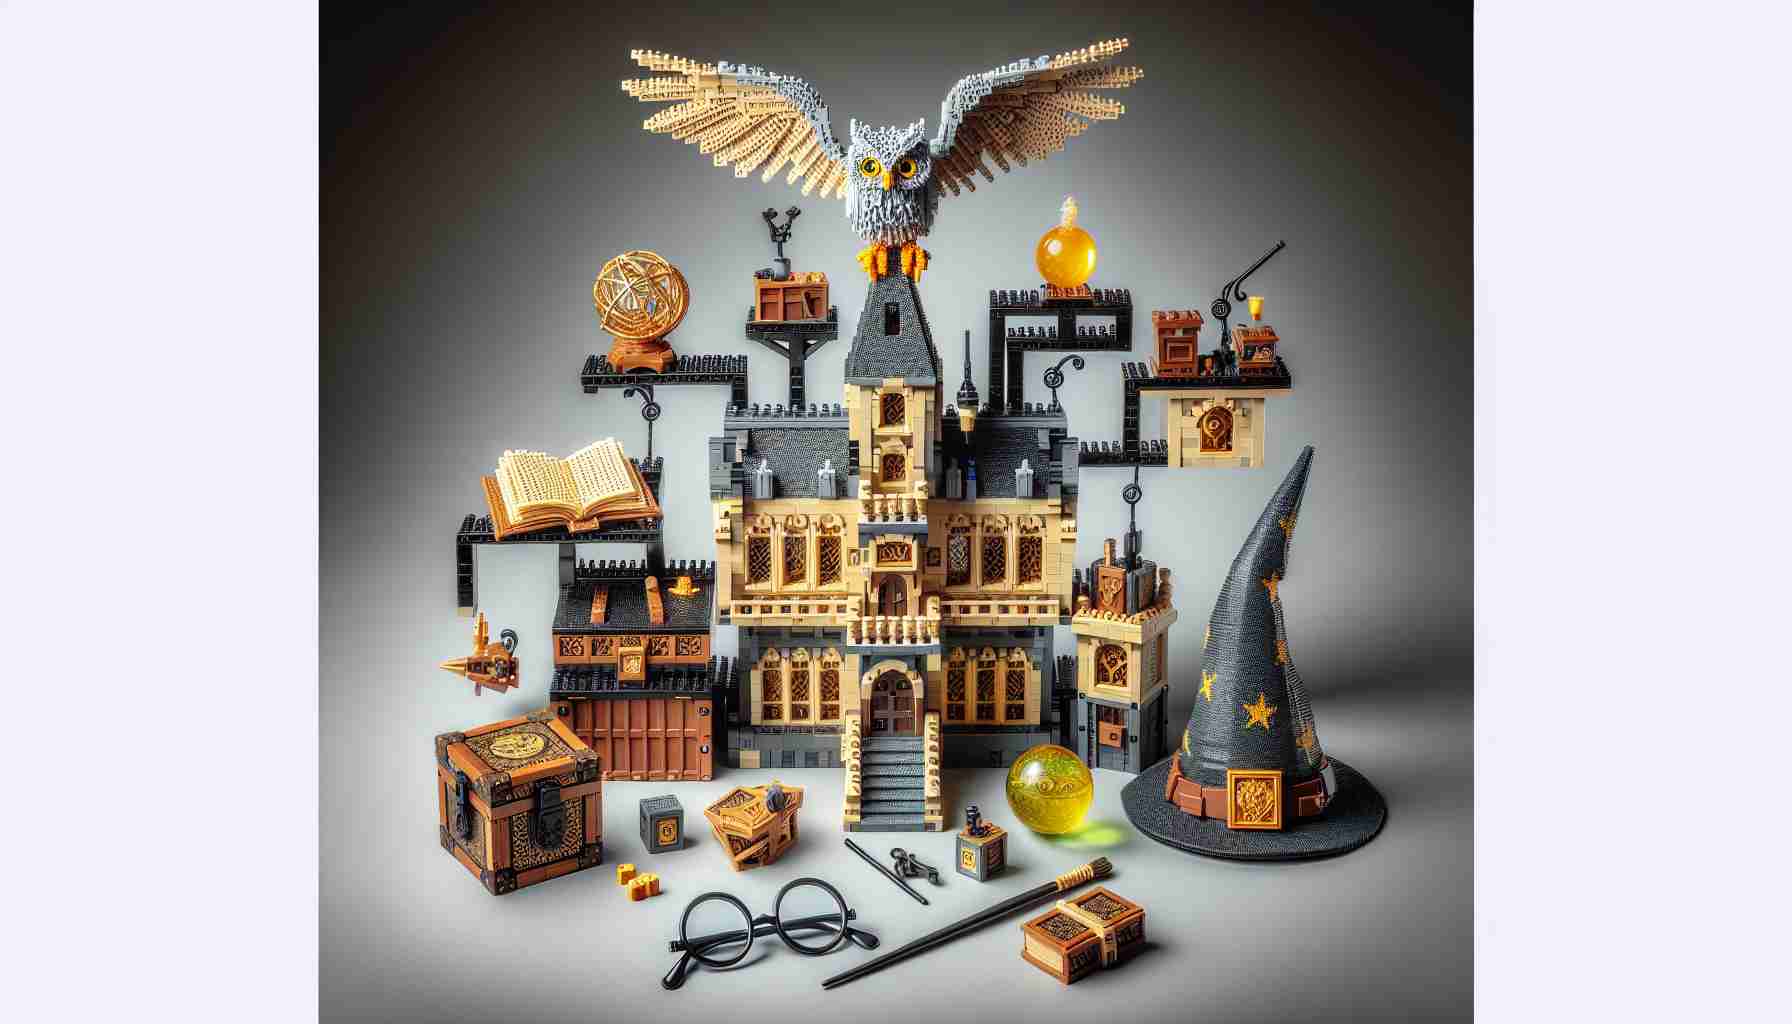 76391 Lego Harry Potter - Ícones de Hogwarts - Edição de